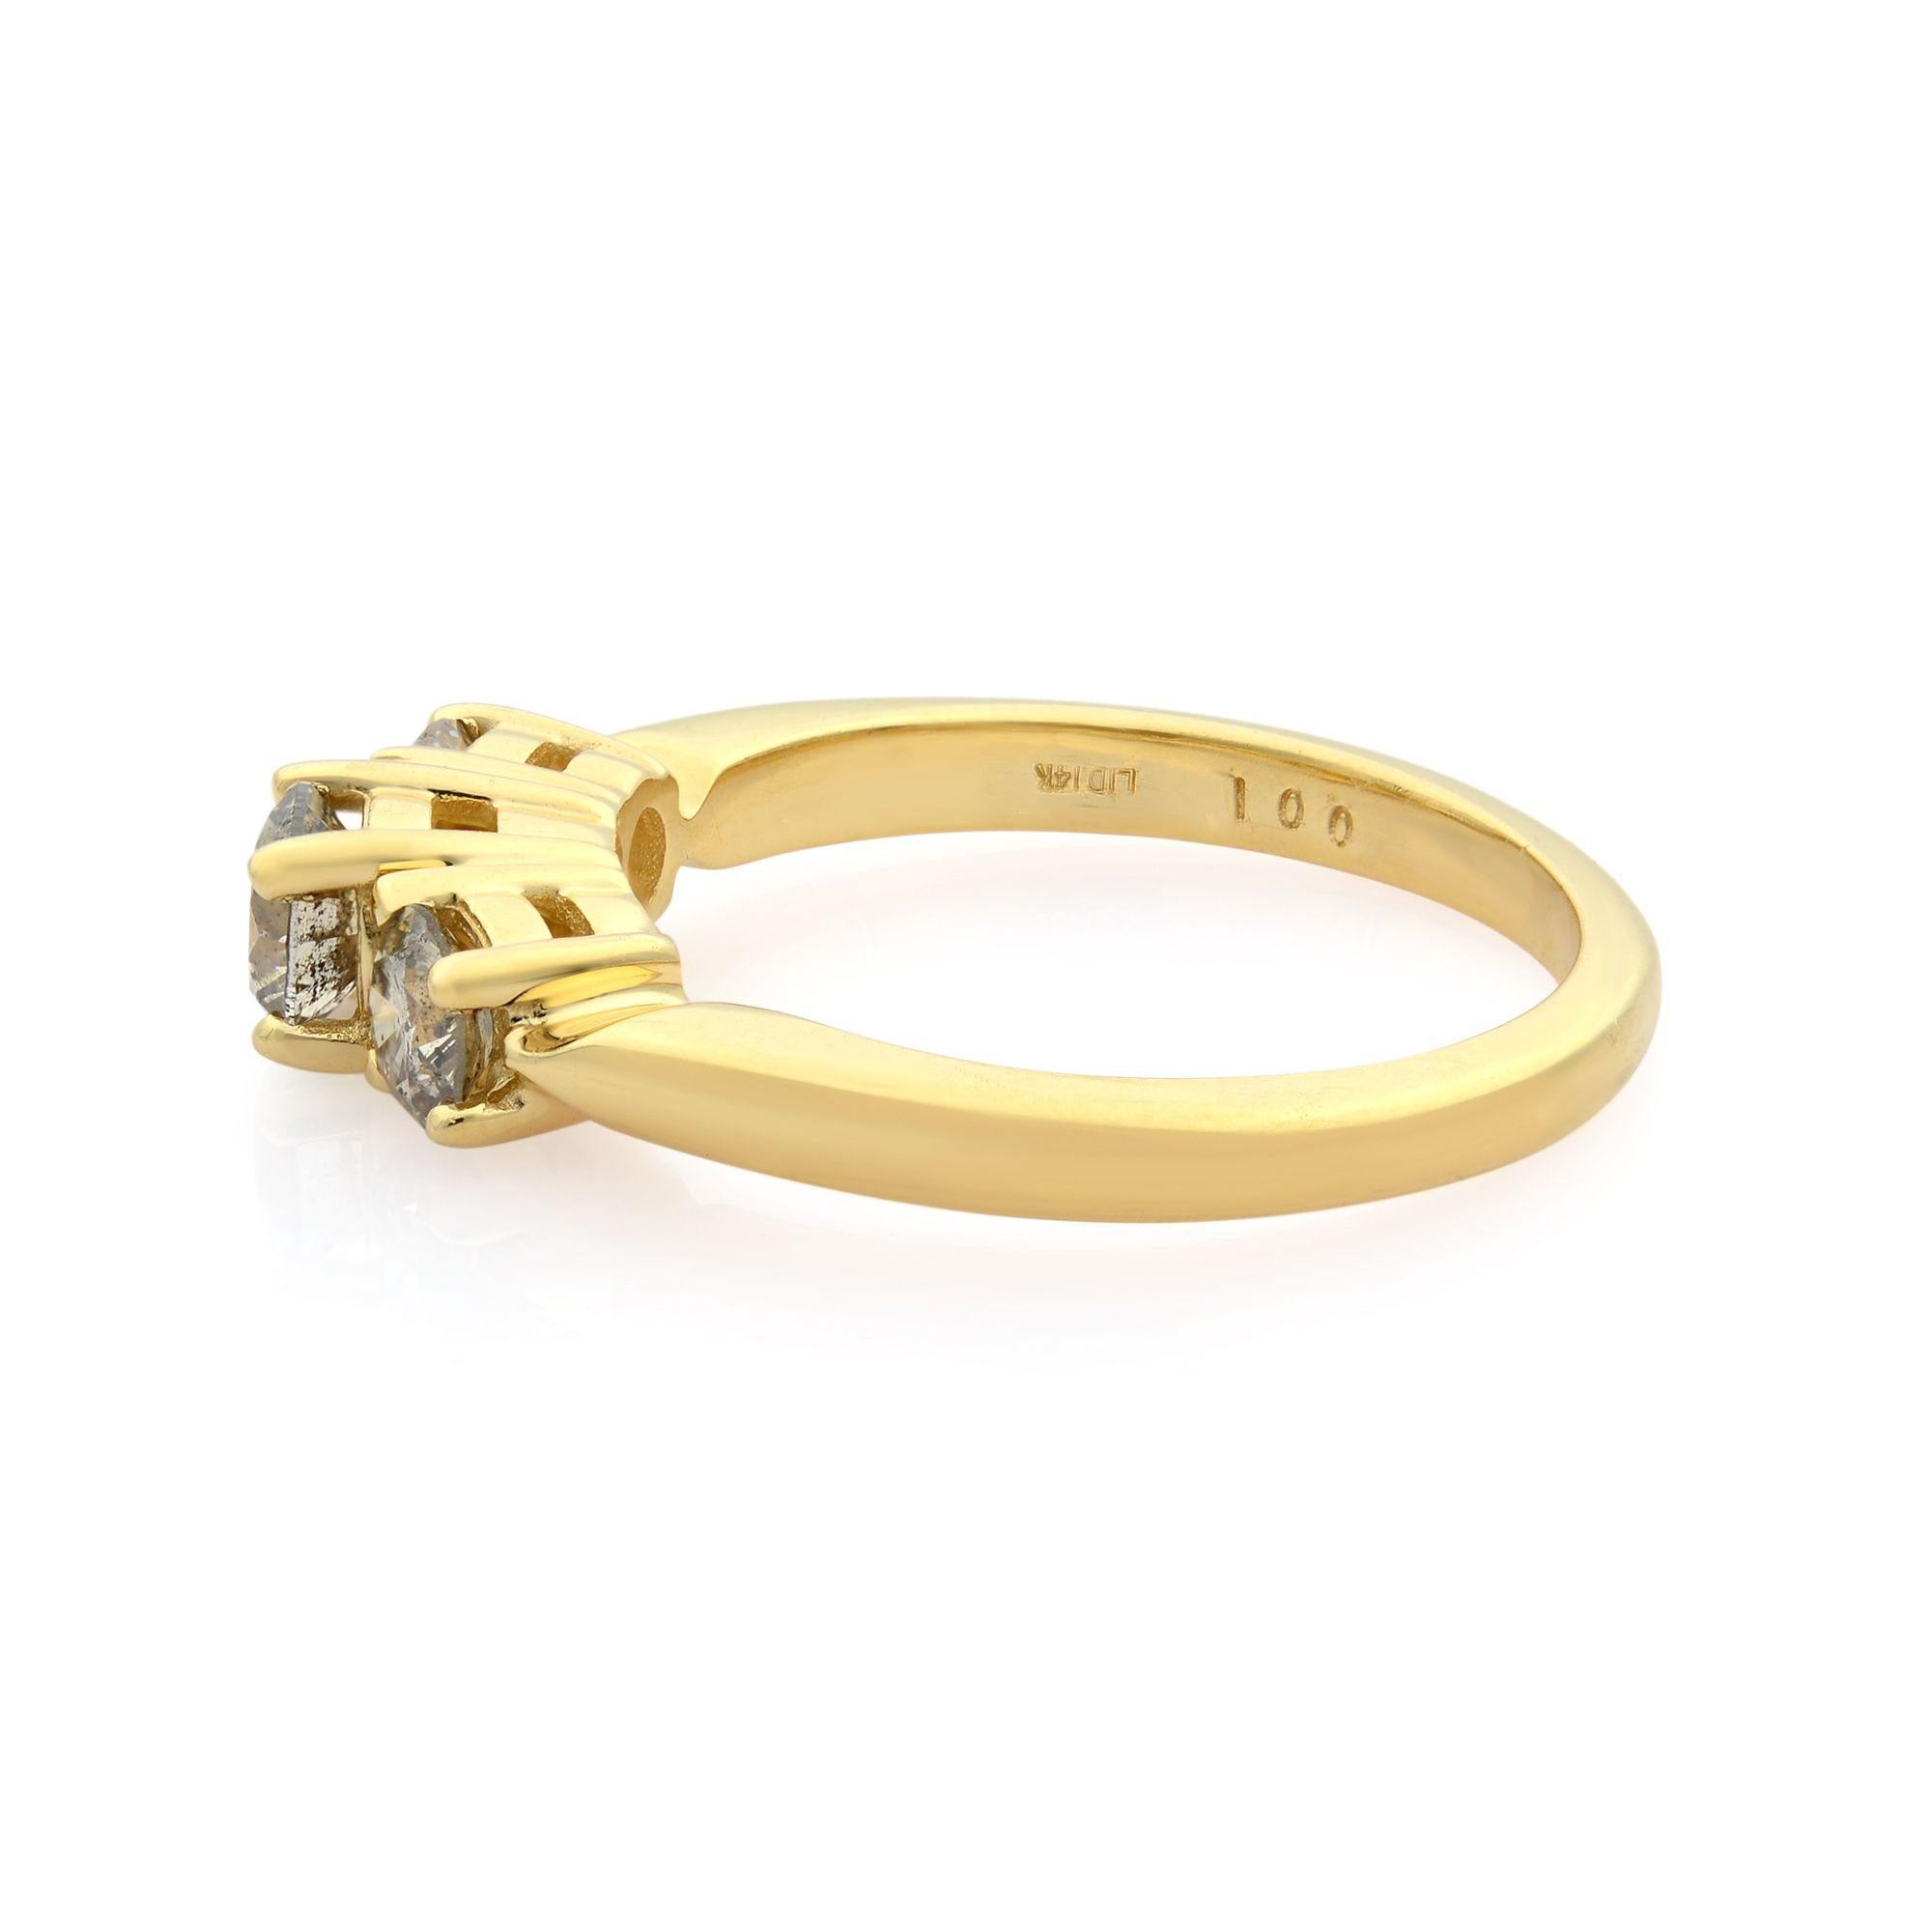 Dieser Ring mit drei Steinen besteht aus einem runden Diamanten in Zackenfassung in der Mitte, der von kleineren Diamanten flankiert wird. Die Fassung verleiht diesem Verlobungsring aus 14 Karat Gelbgold eine schöne Seitenansicht. Karatgewicht